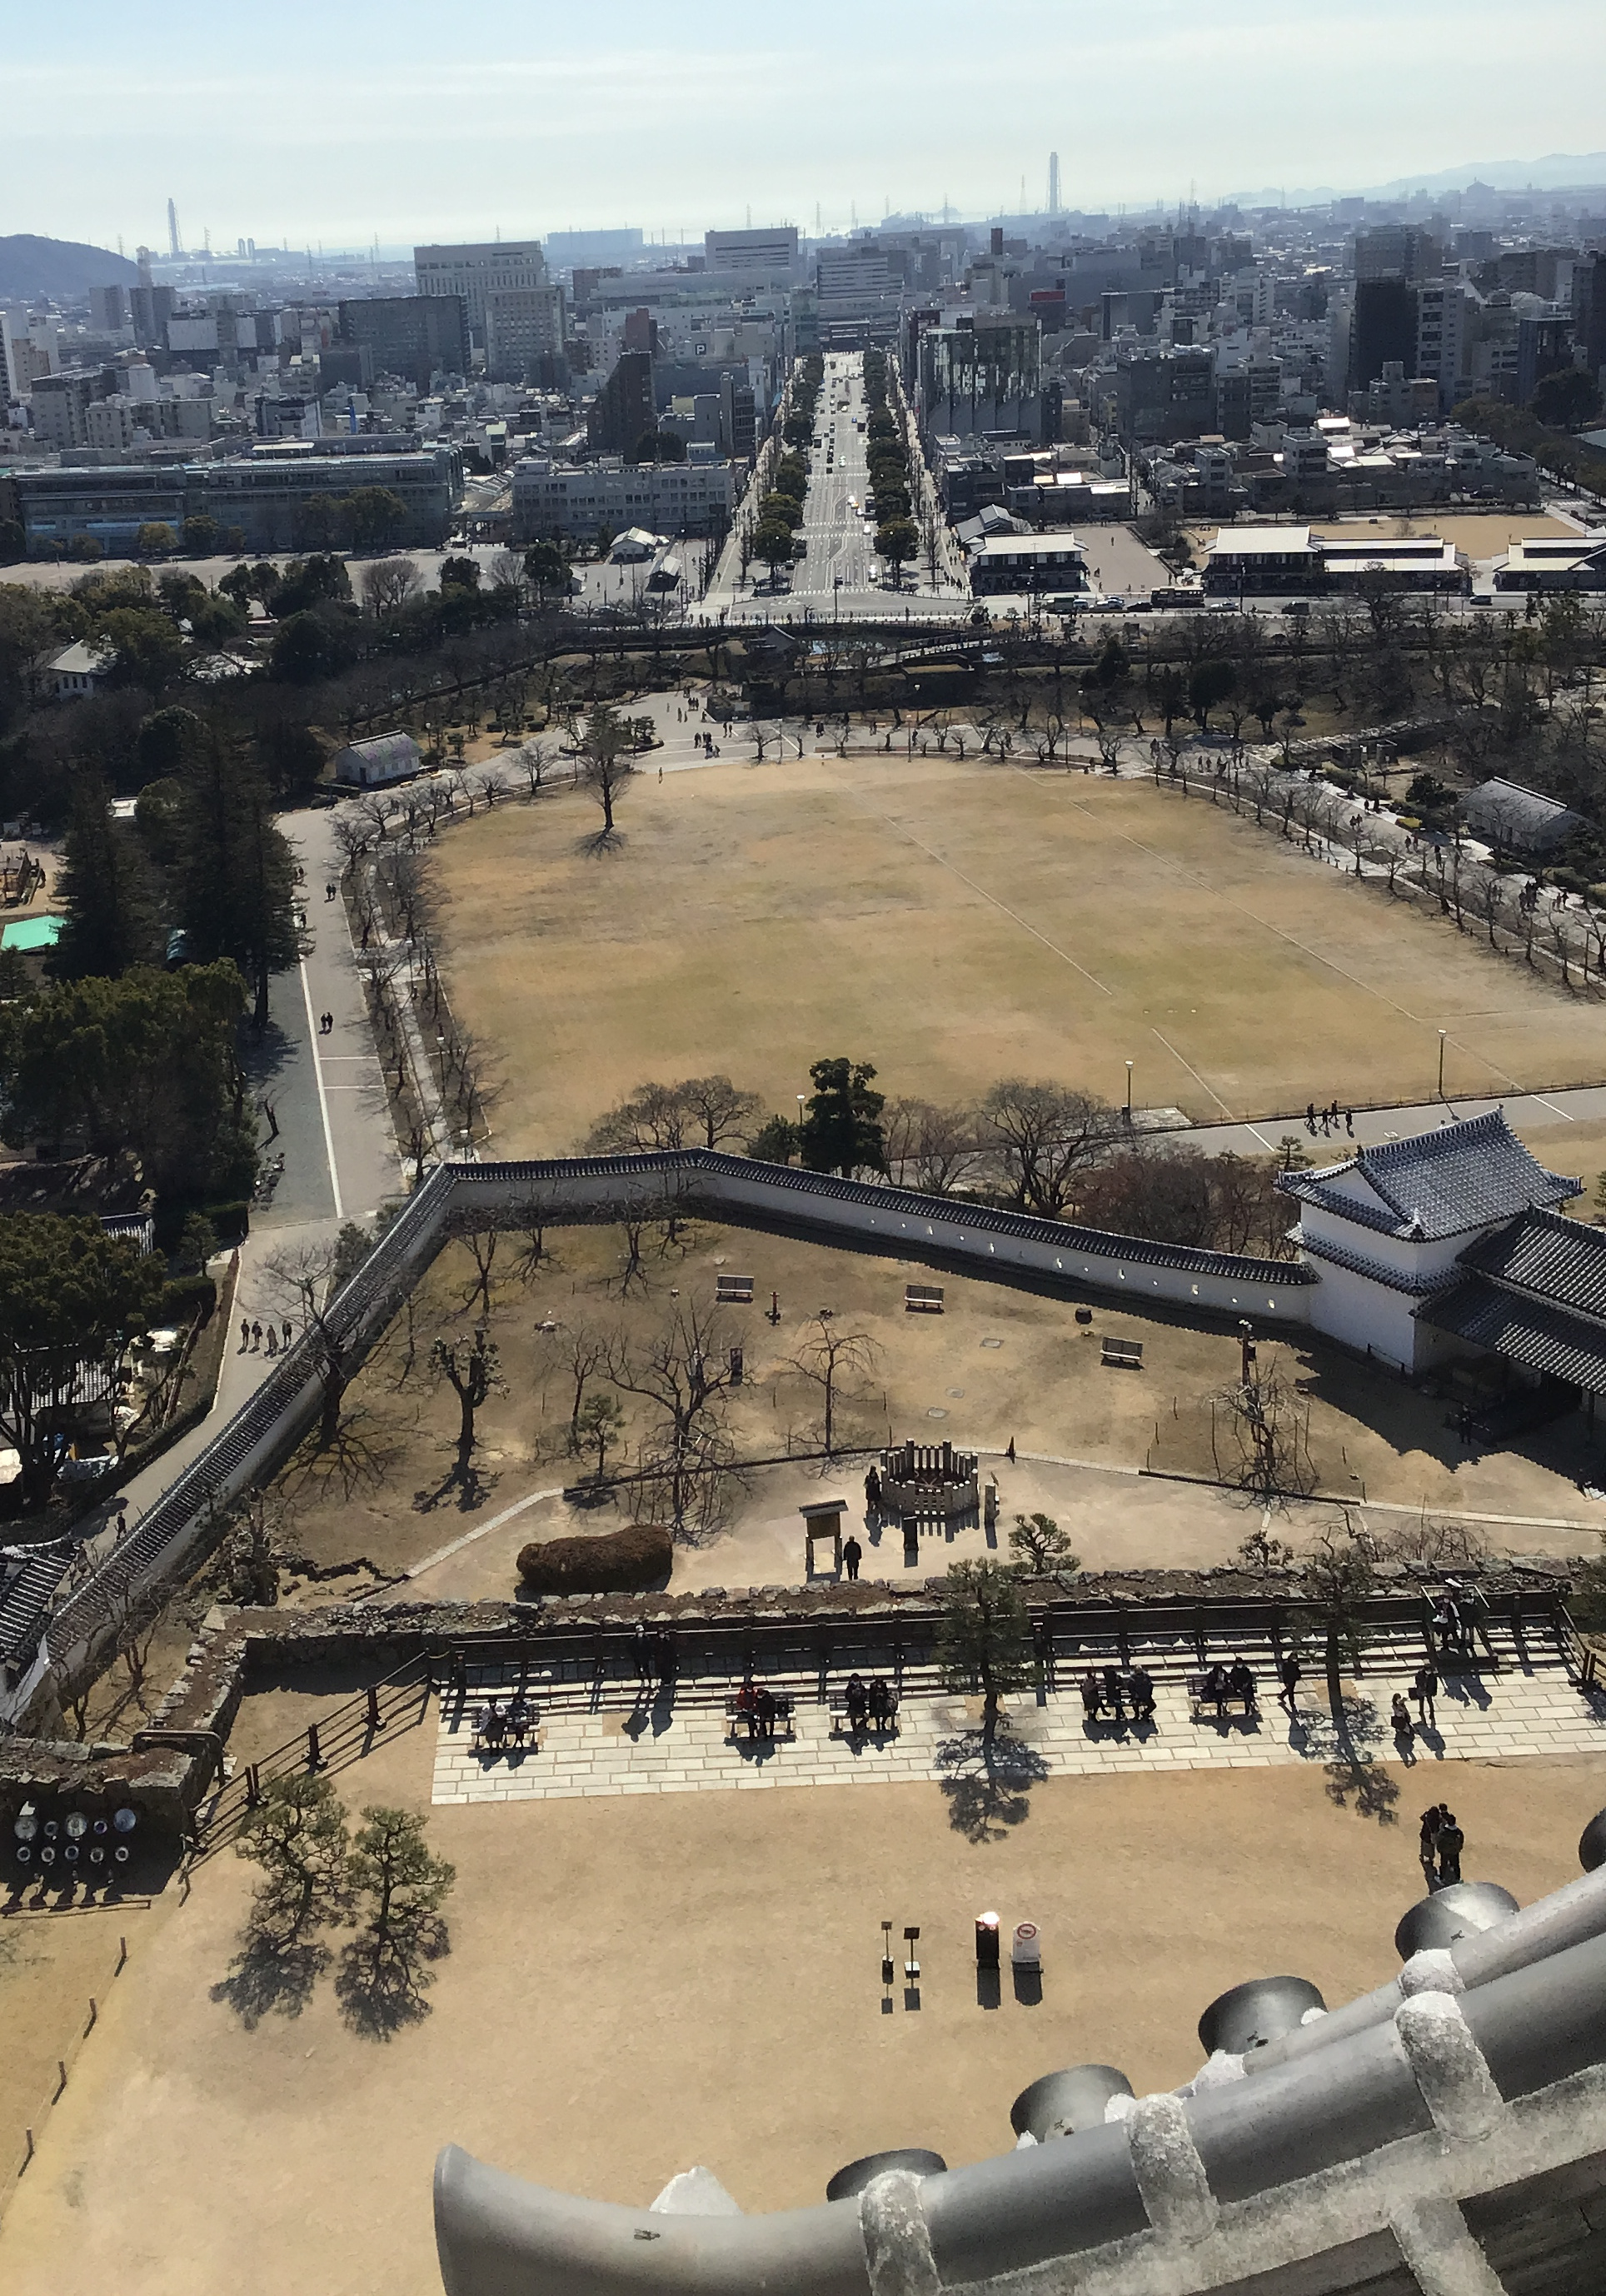 The city outside Himeji Castle